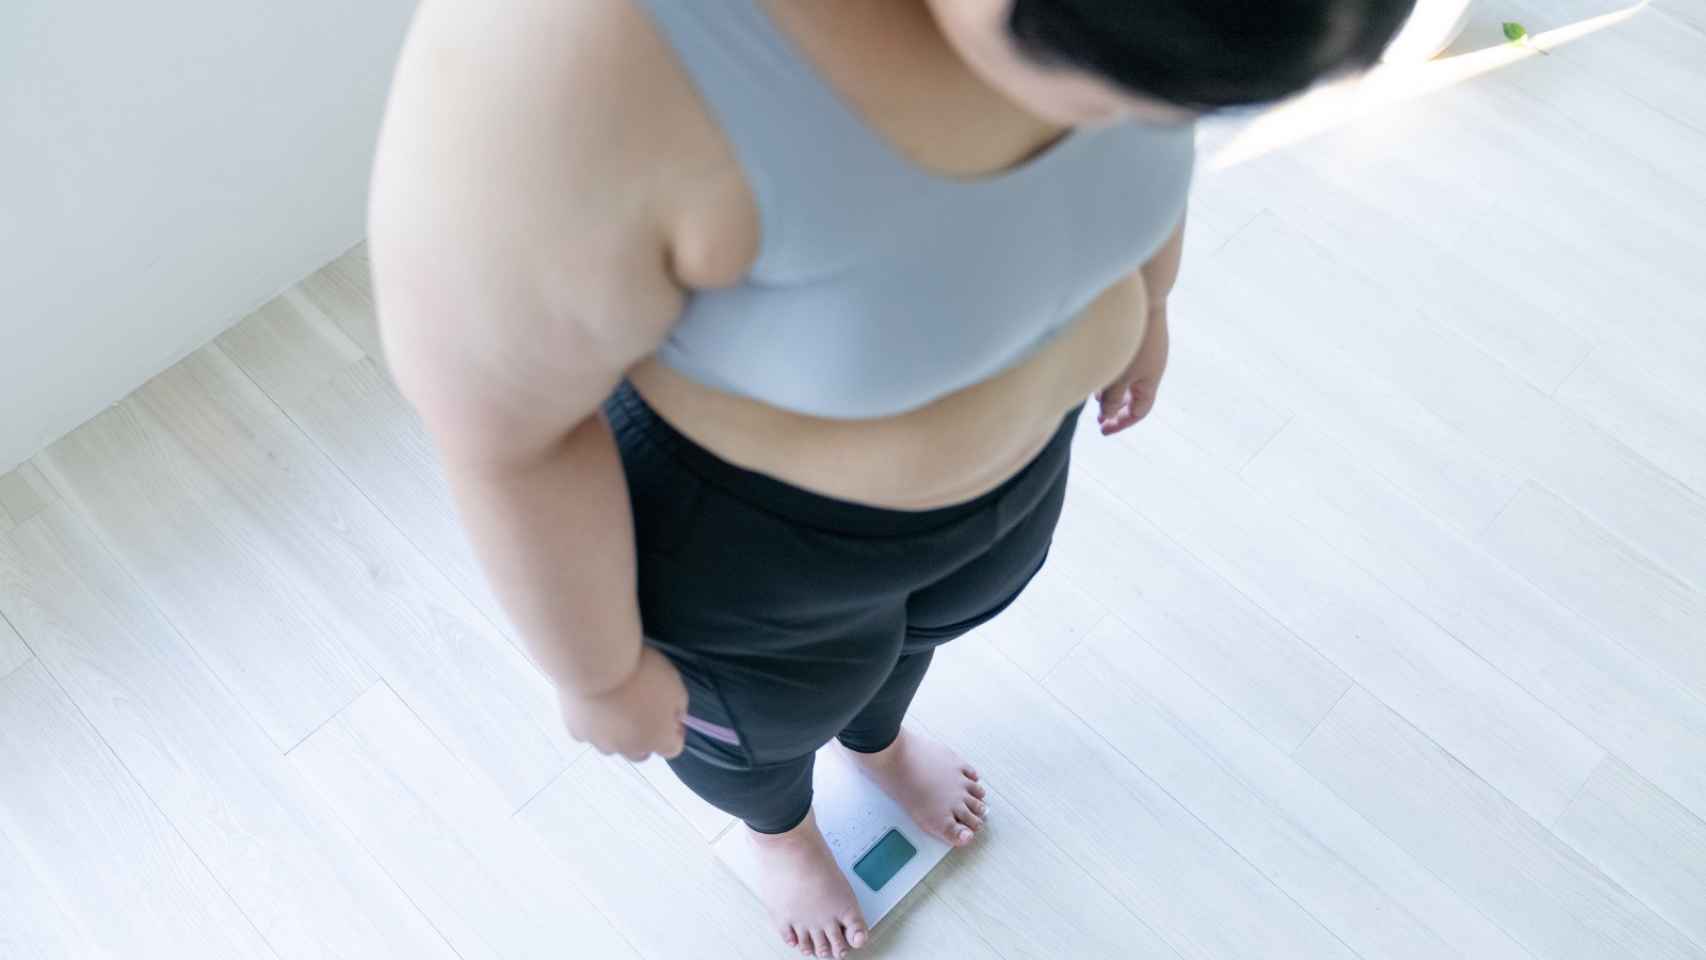 Cuatro de cada diez millennials vascos tienen sobrepeso u obesidad/GettyImages